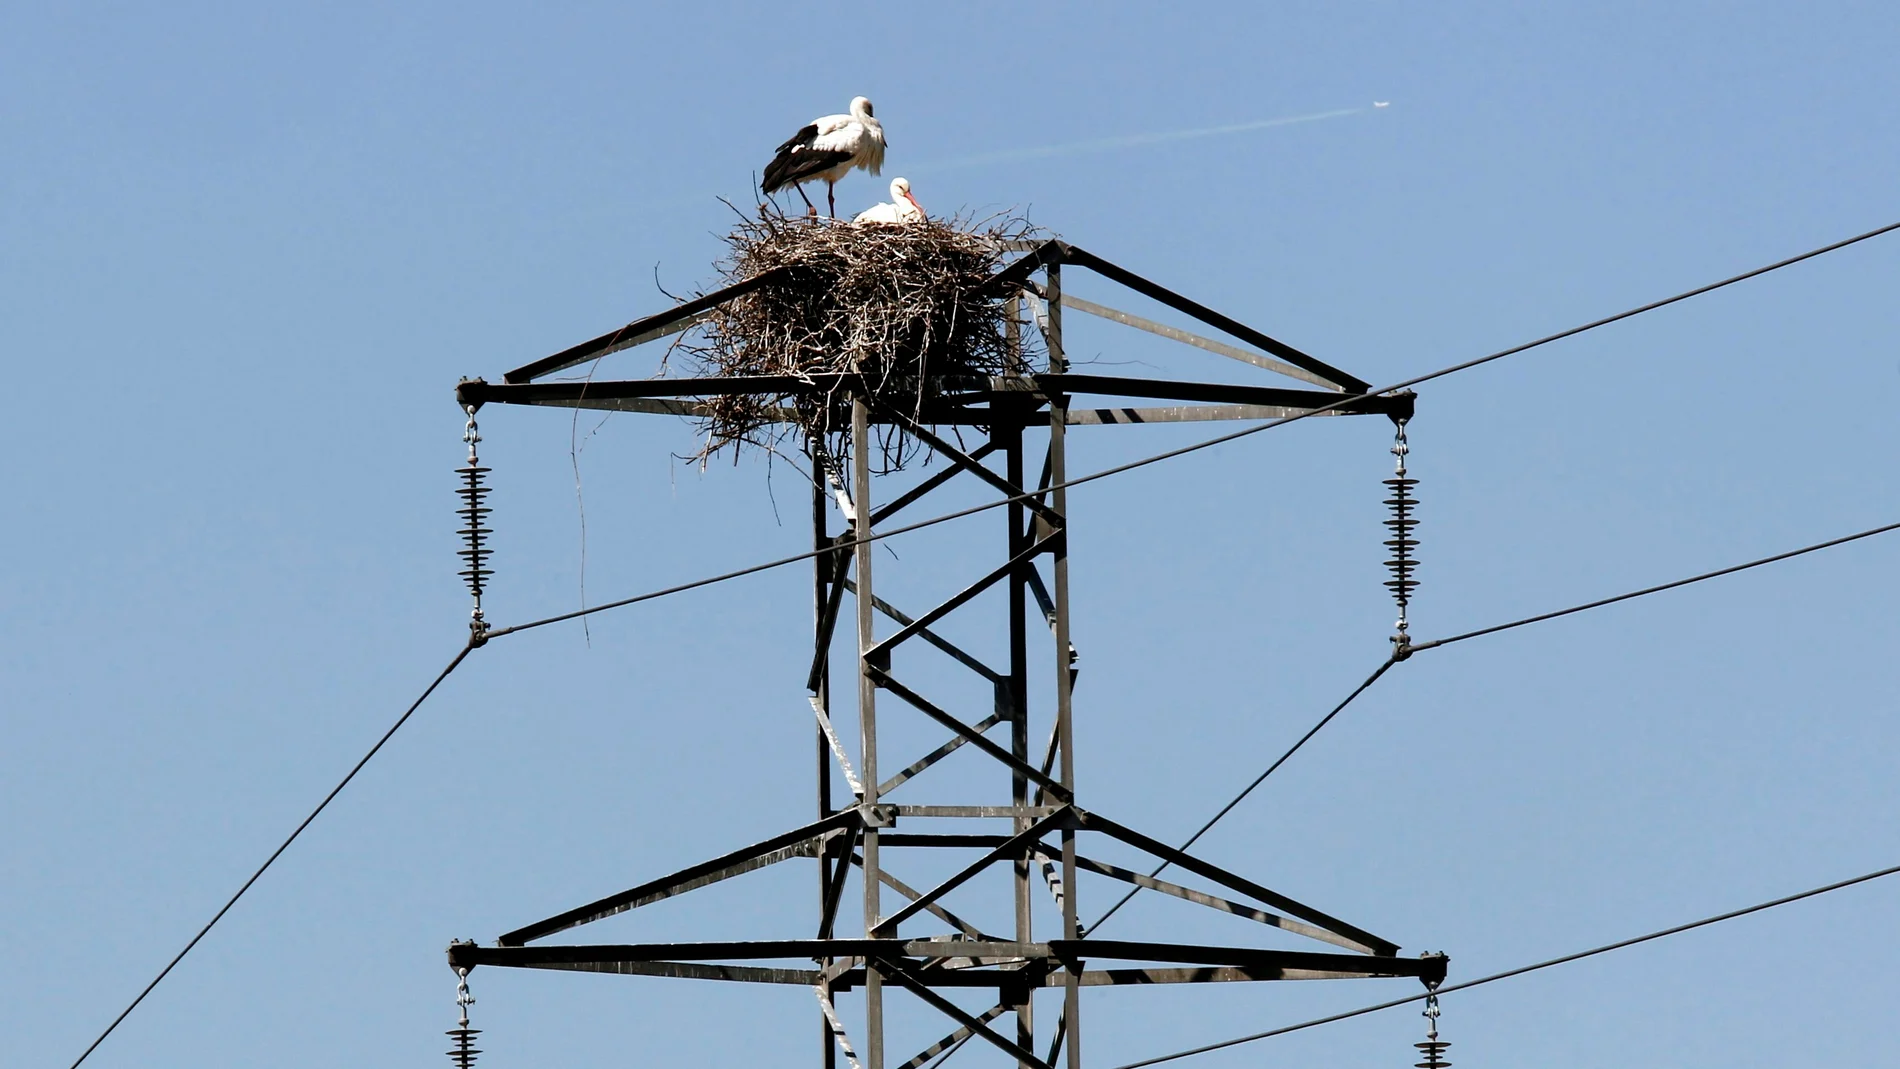 Dos cigüeñas permanecen junto al nido en un poste del tendido eléctrico